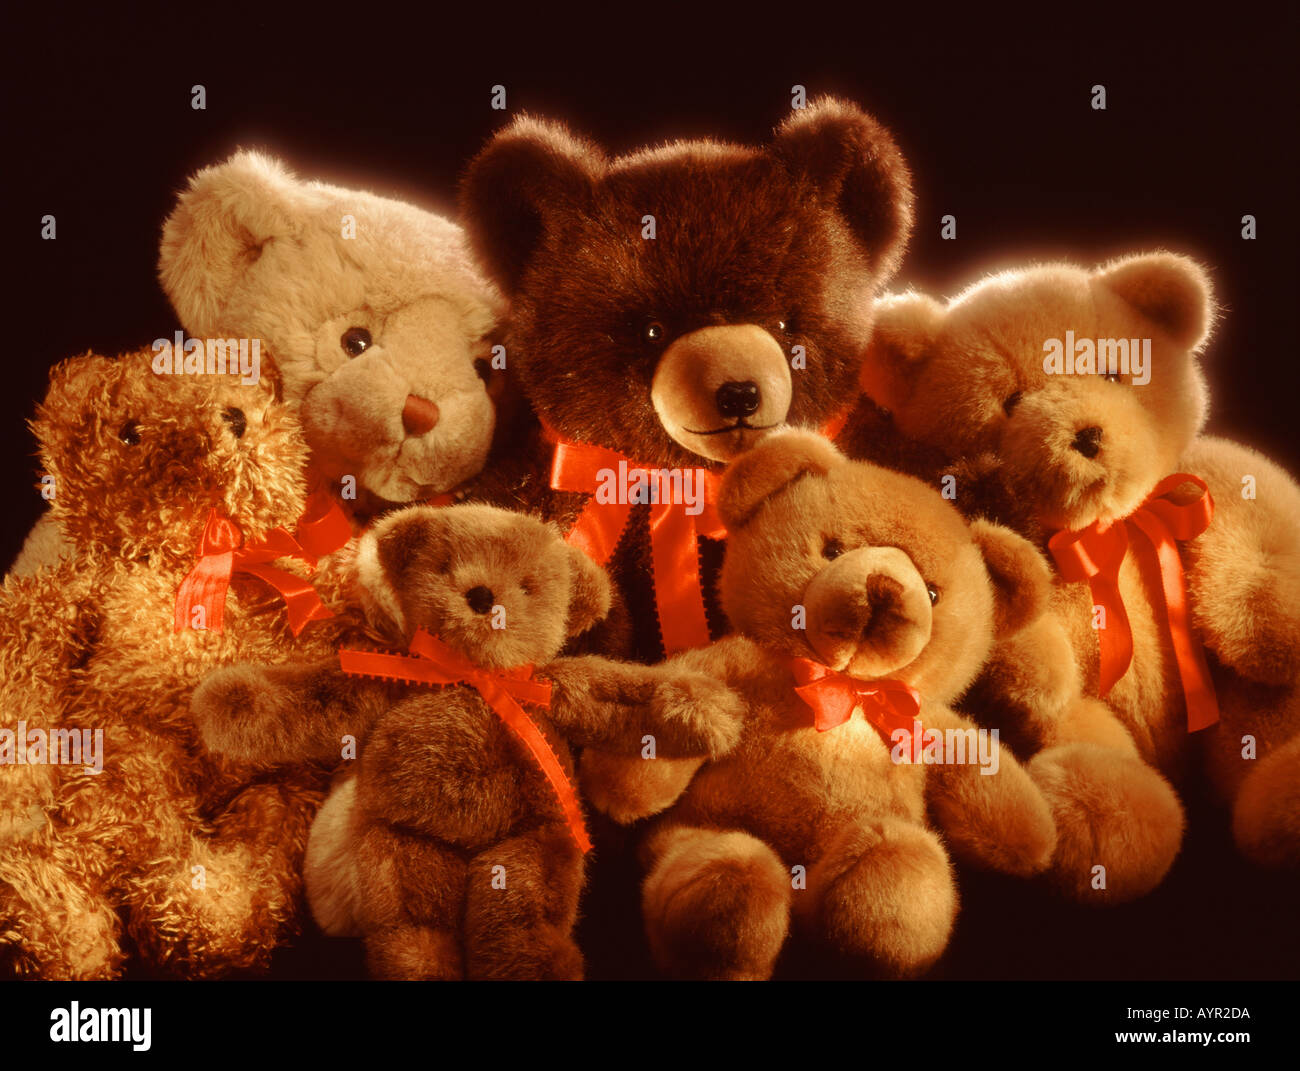 4 teddy bears